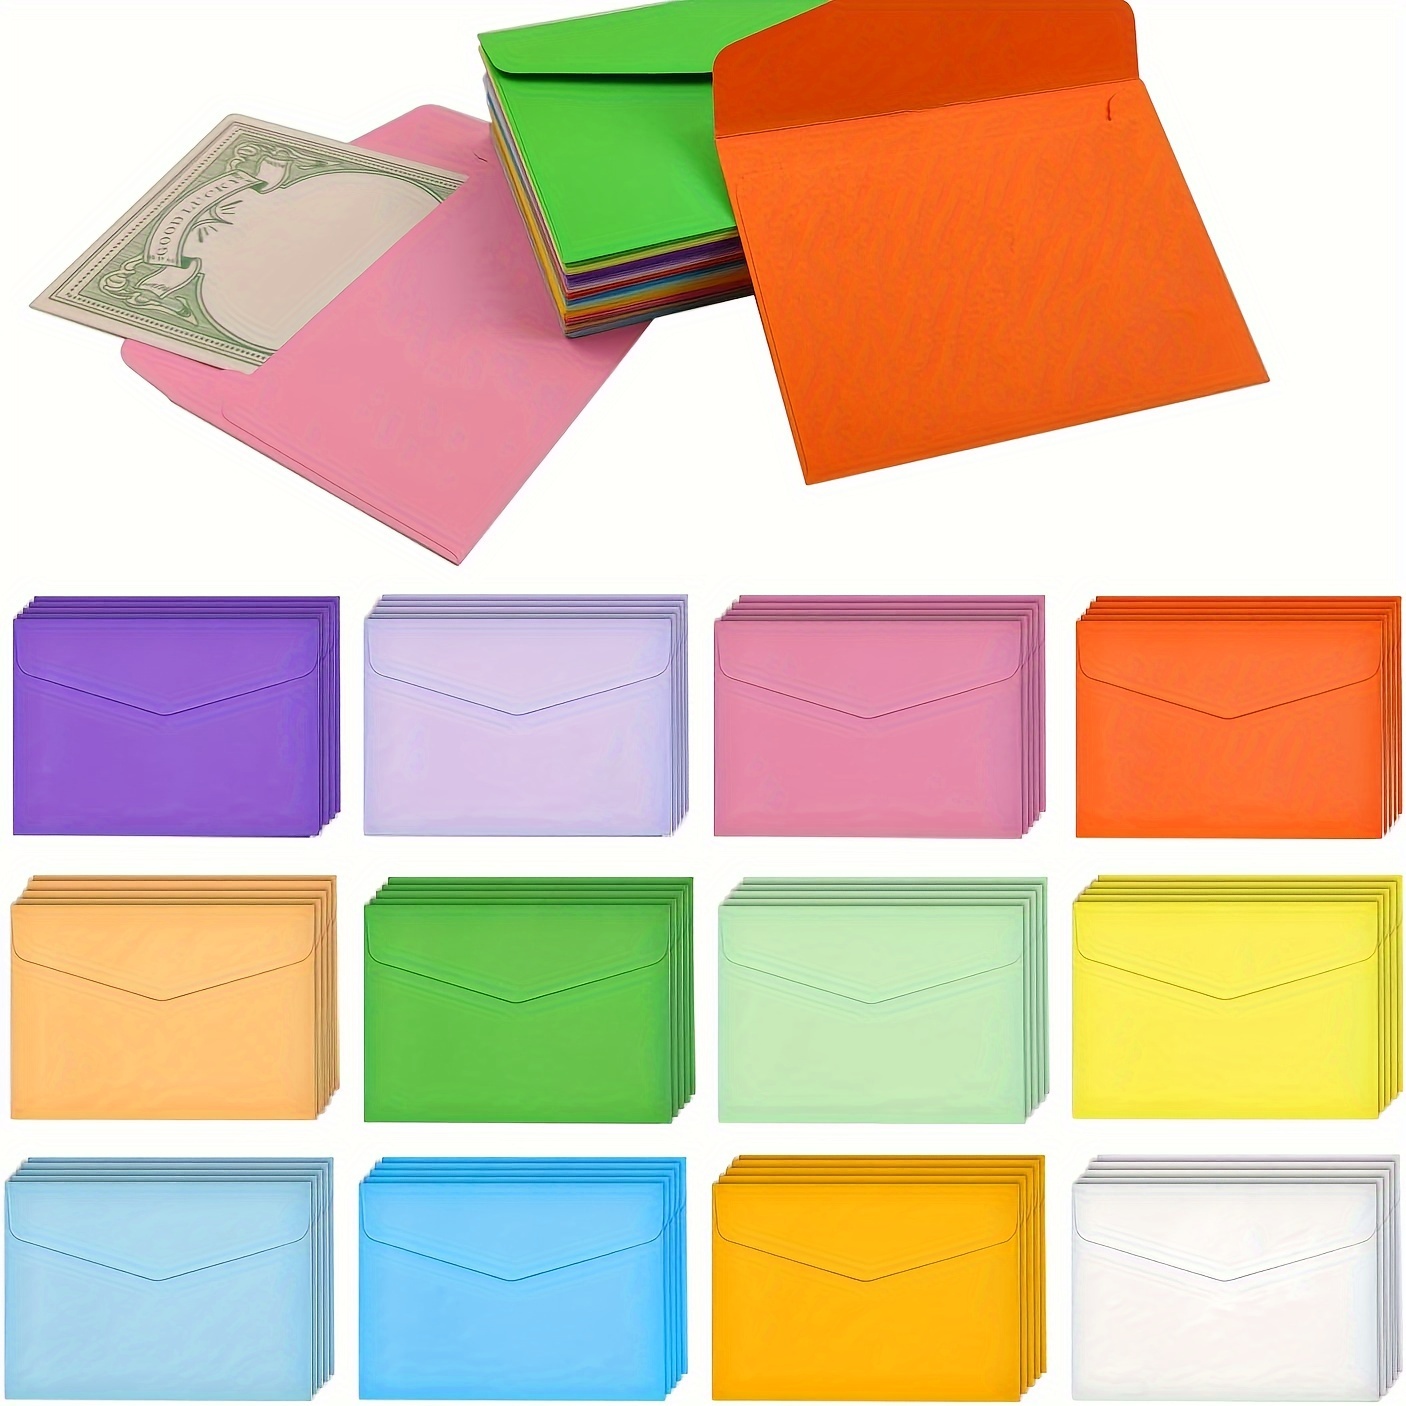 

60pcs Of 12 Colors 8.2 X 11.5 Cm Mini Envelopes, Multicolor Envelopes, Small Envelopes, Multicolor Greeting Cards, Seeds, Love Letters